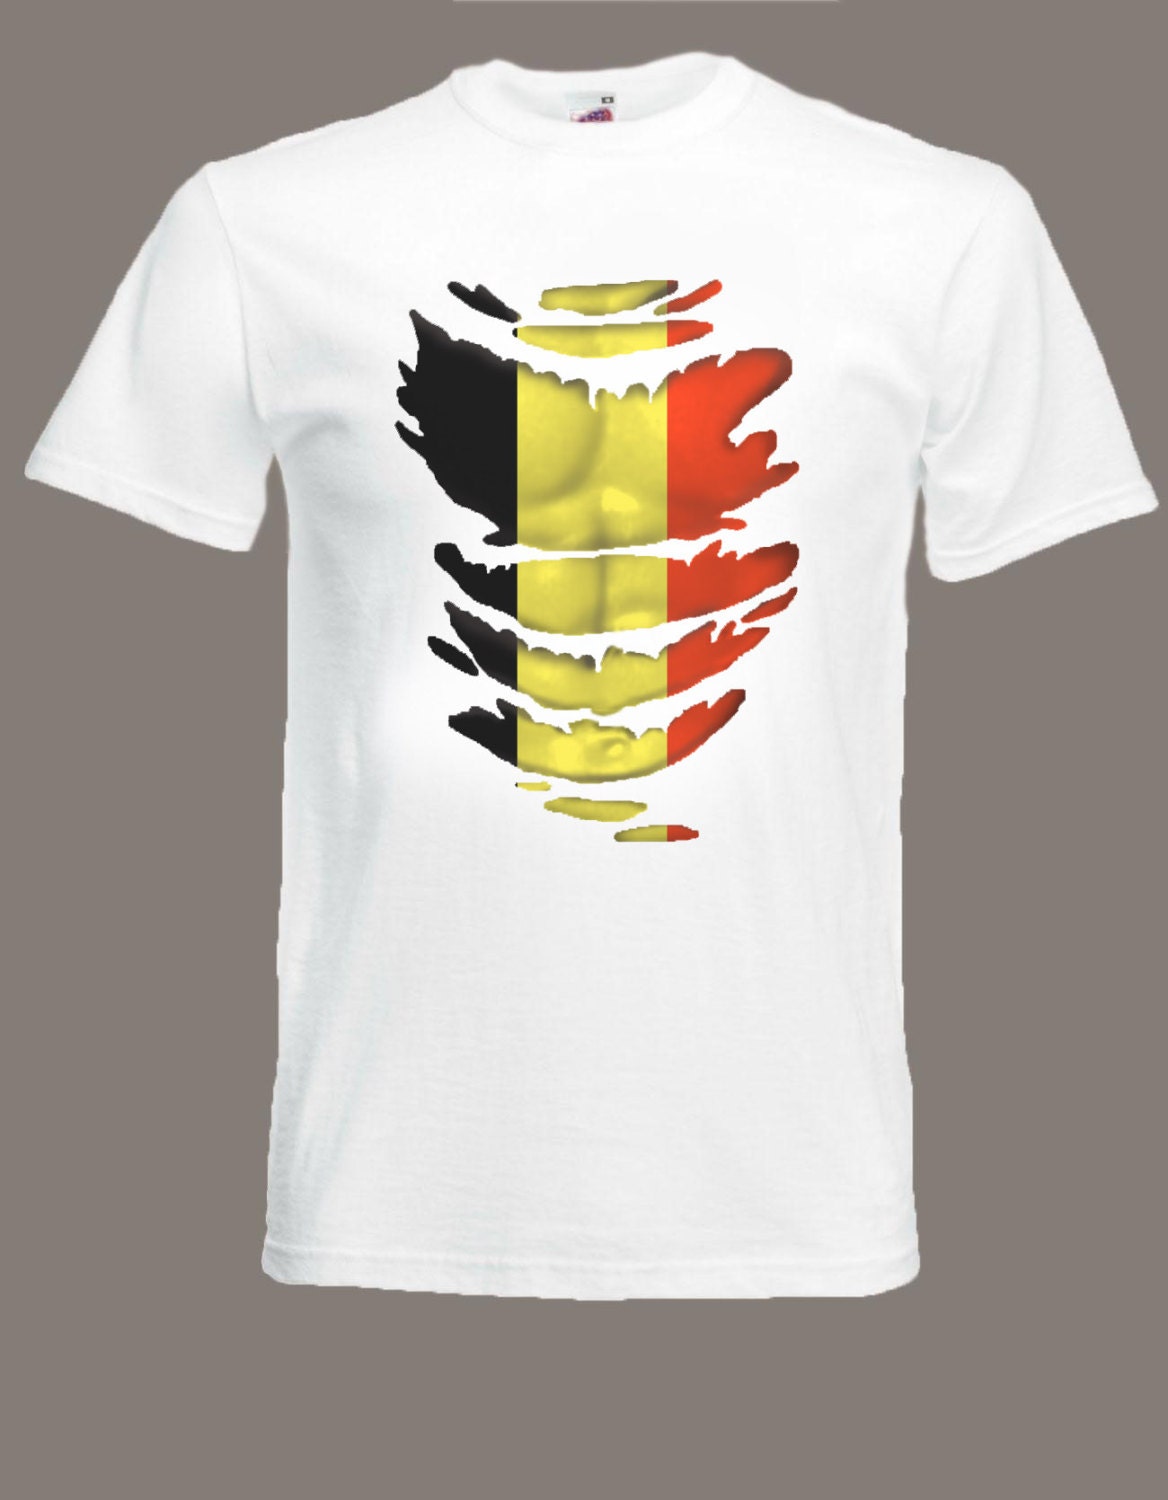 Drapeau Tricolore T-Shirts for Sale